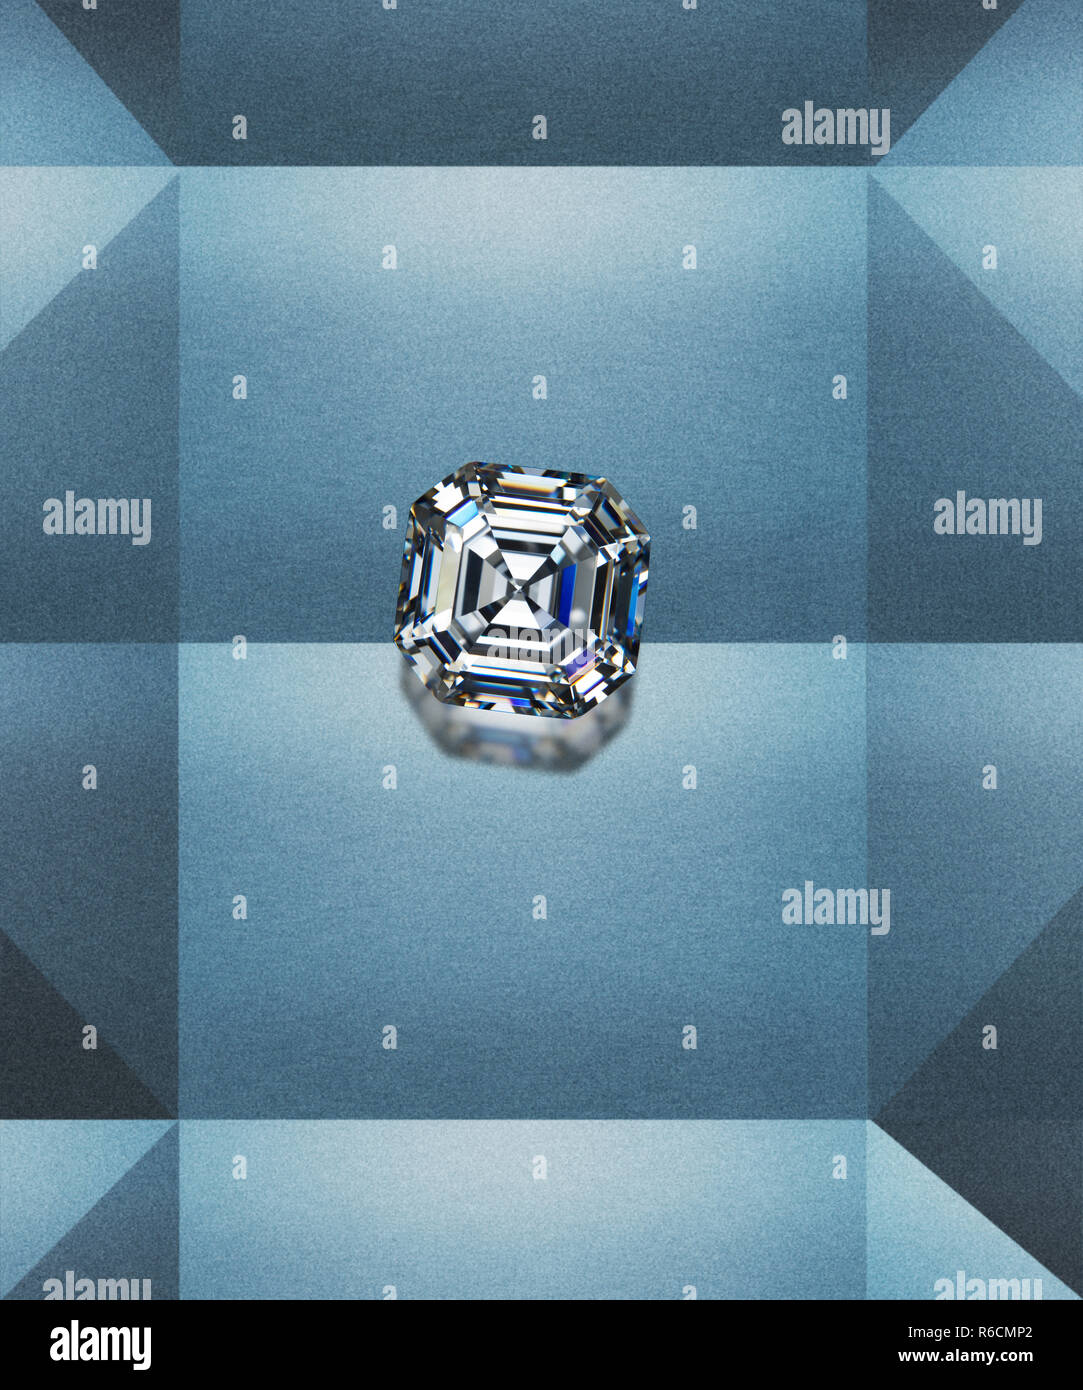 Immagine digitale della bella piazza diamante del taglio della pietra con un geometrico sfondo grigio Foto Stock